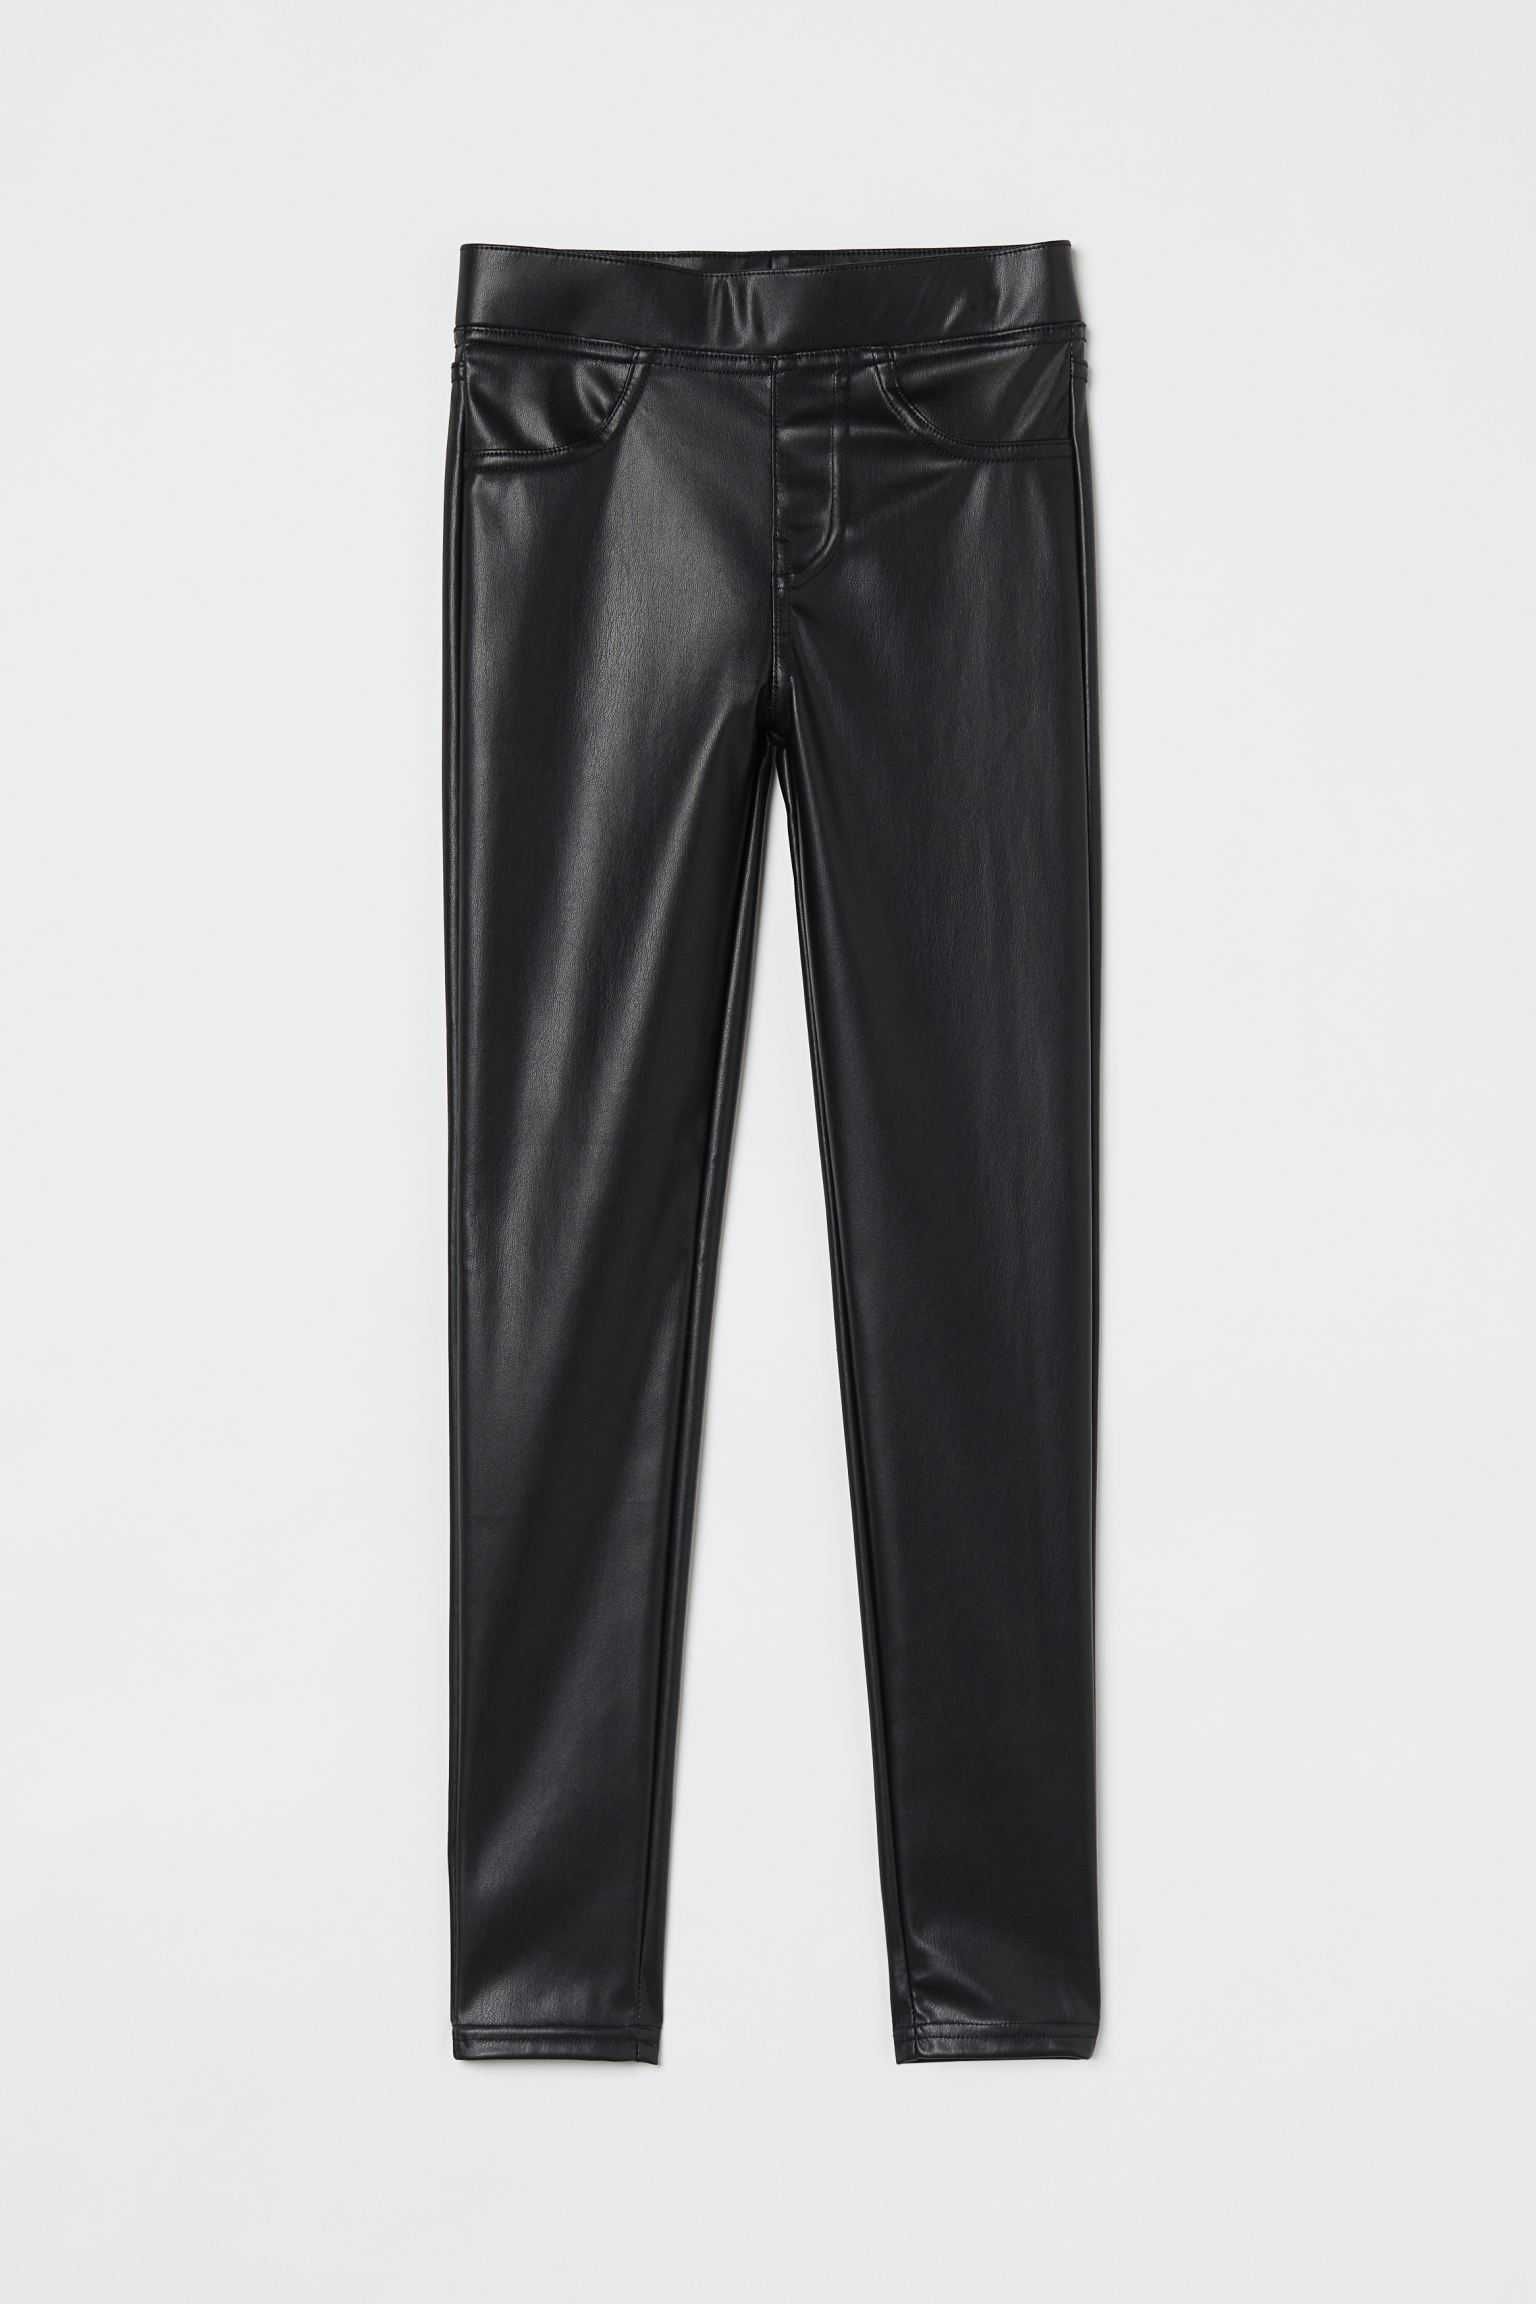 Новые штаны кожзам, экокожа, разм. 13-14лет, бренд H&M.